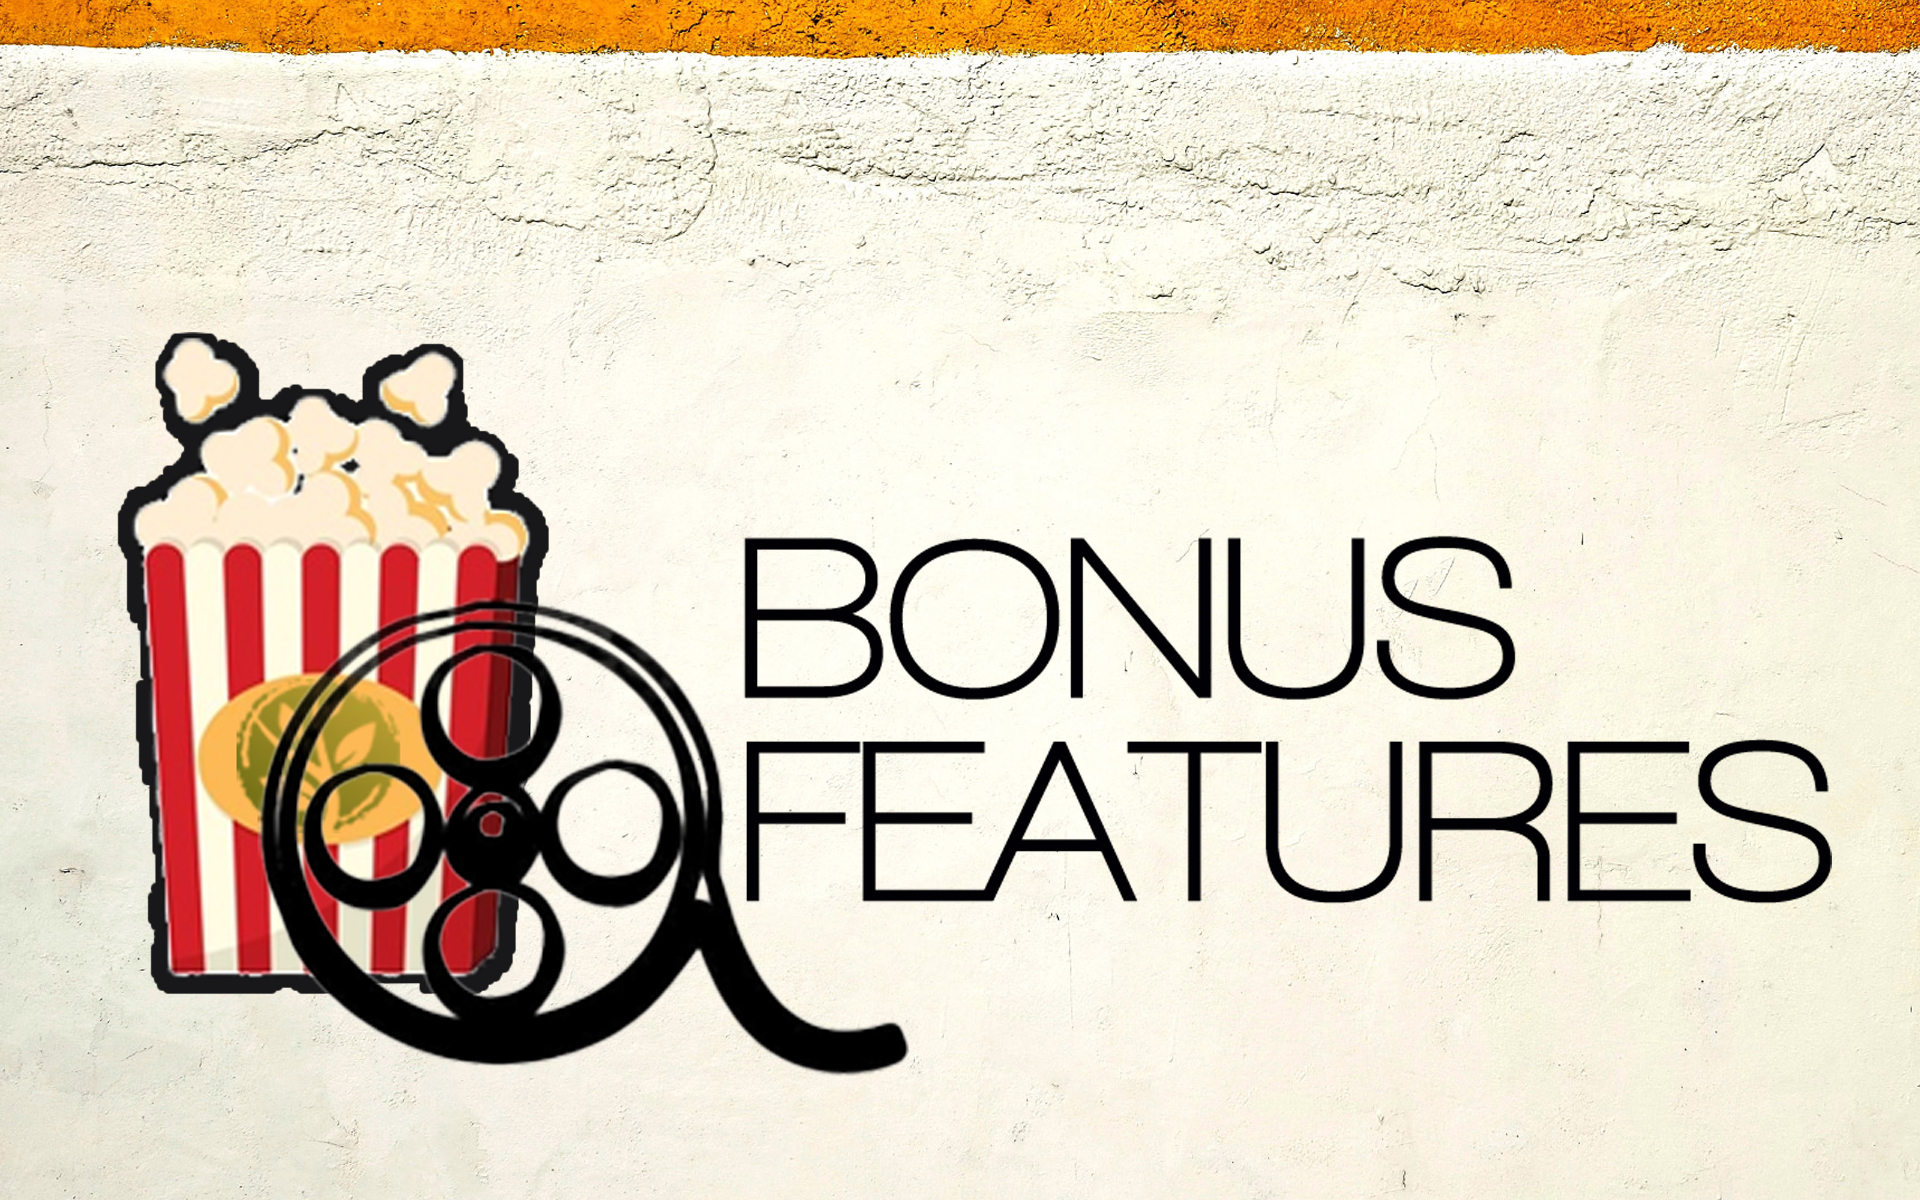 Bonus Features - Engage